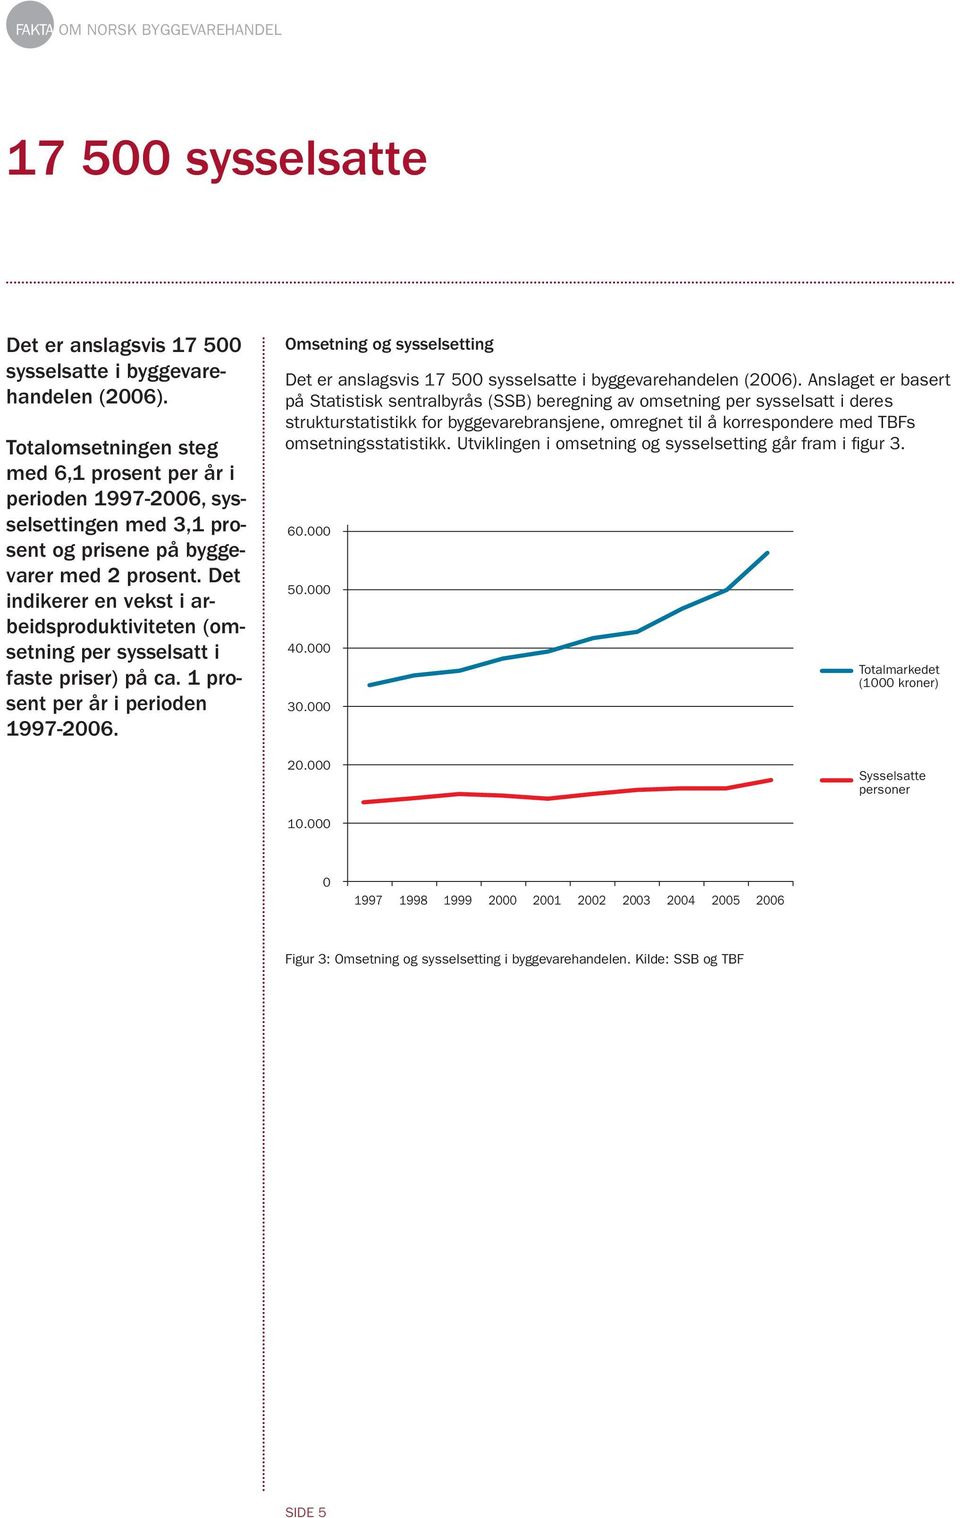 Det indikerer en vekst i arbeidsproduktiviteten (omsetning per sysselsatt i faste priser) på ca. 1 prosent per år i perioden 1997-26.